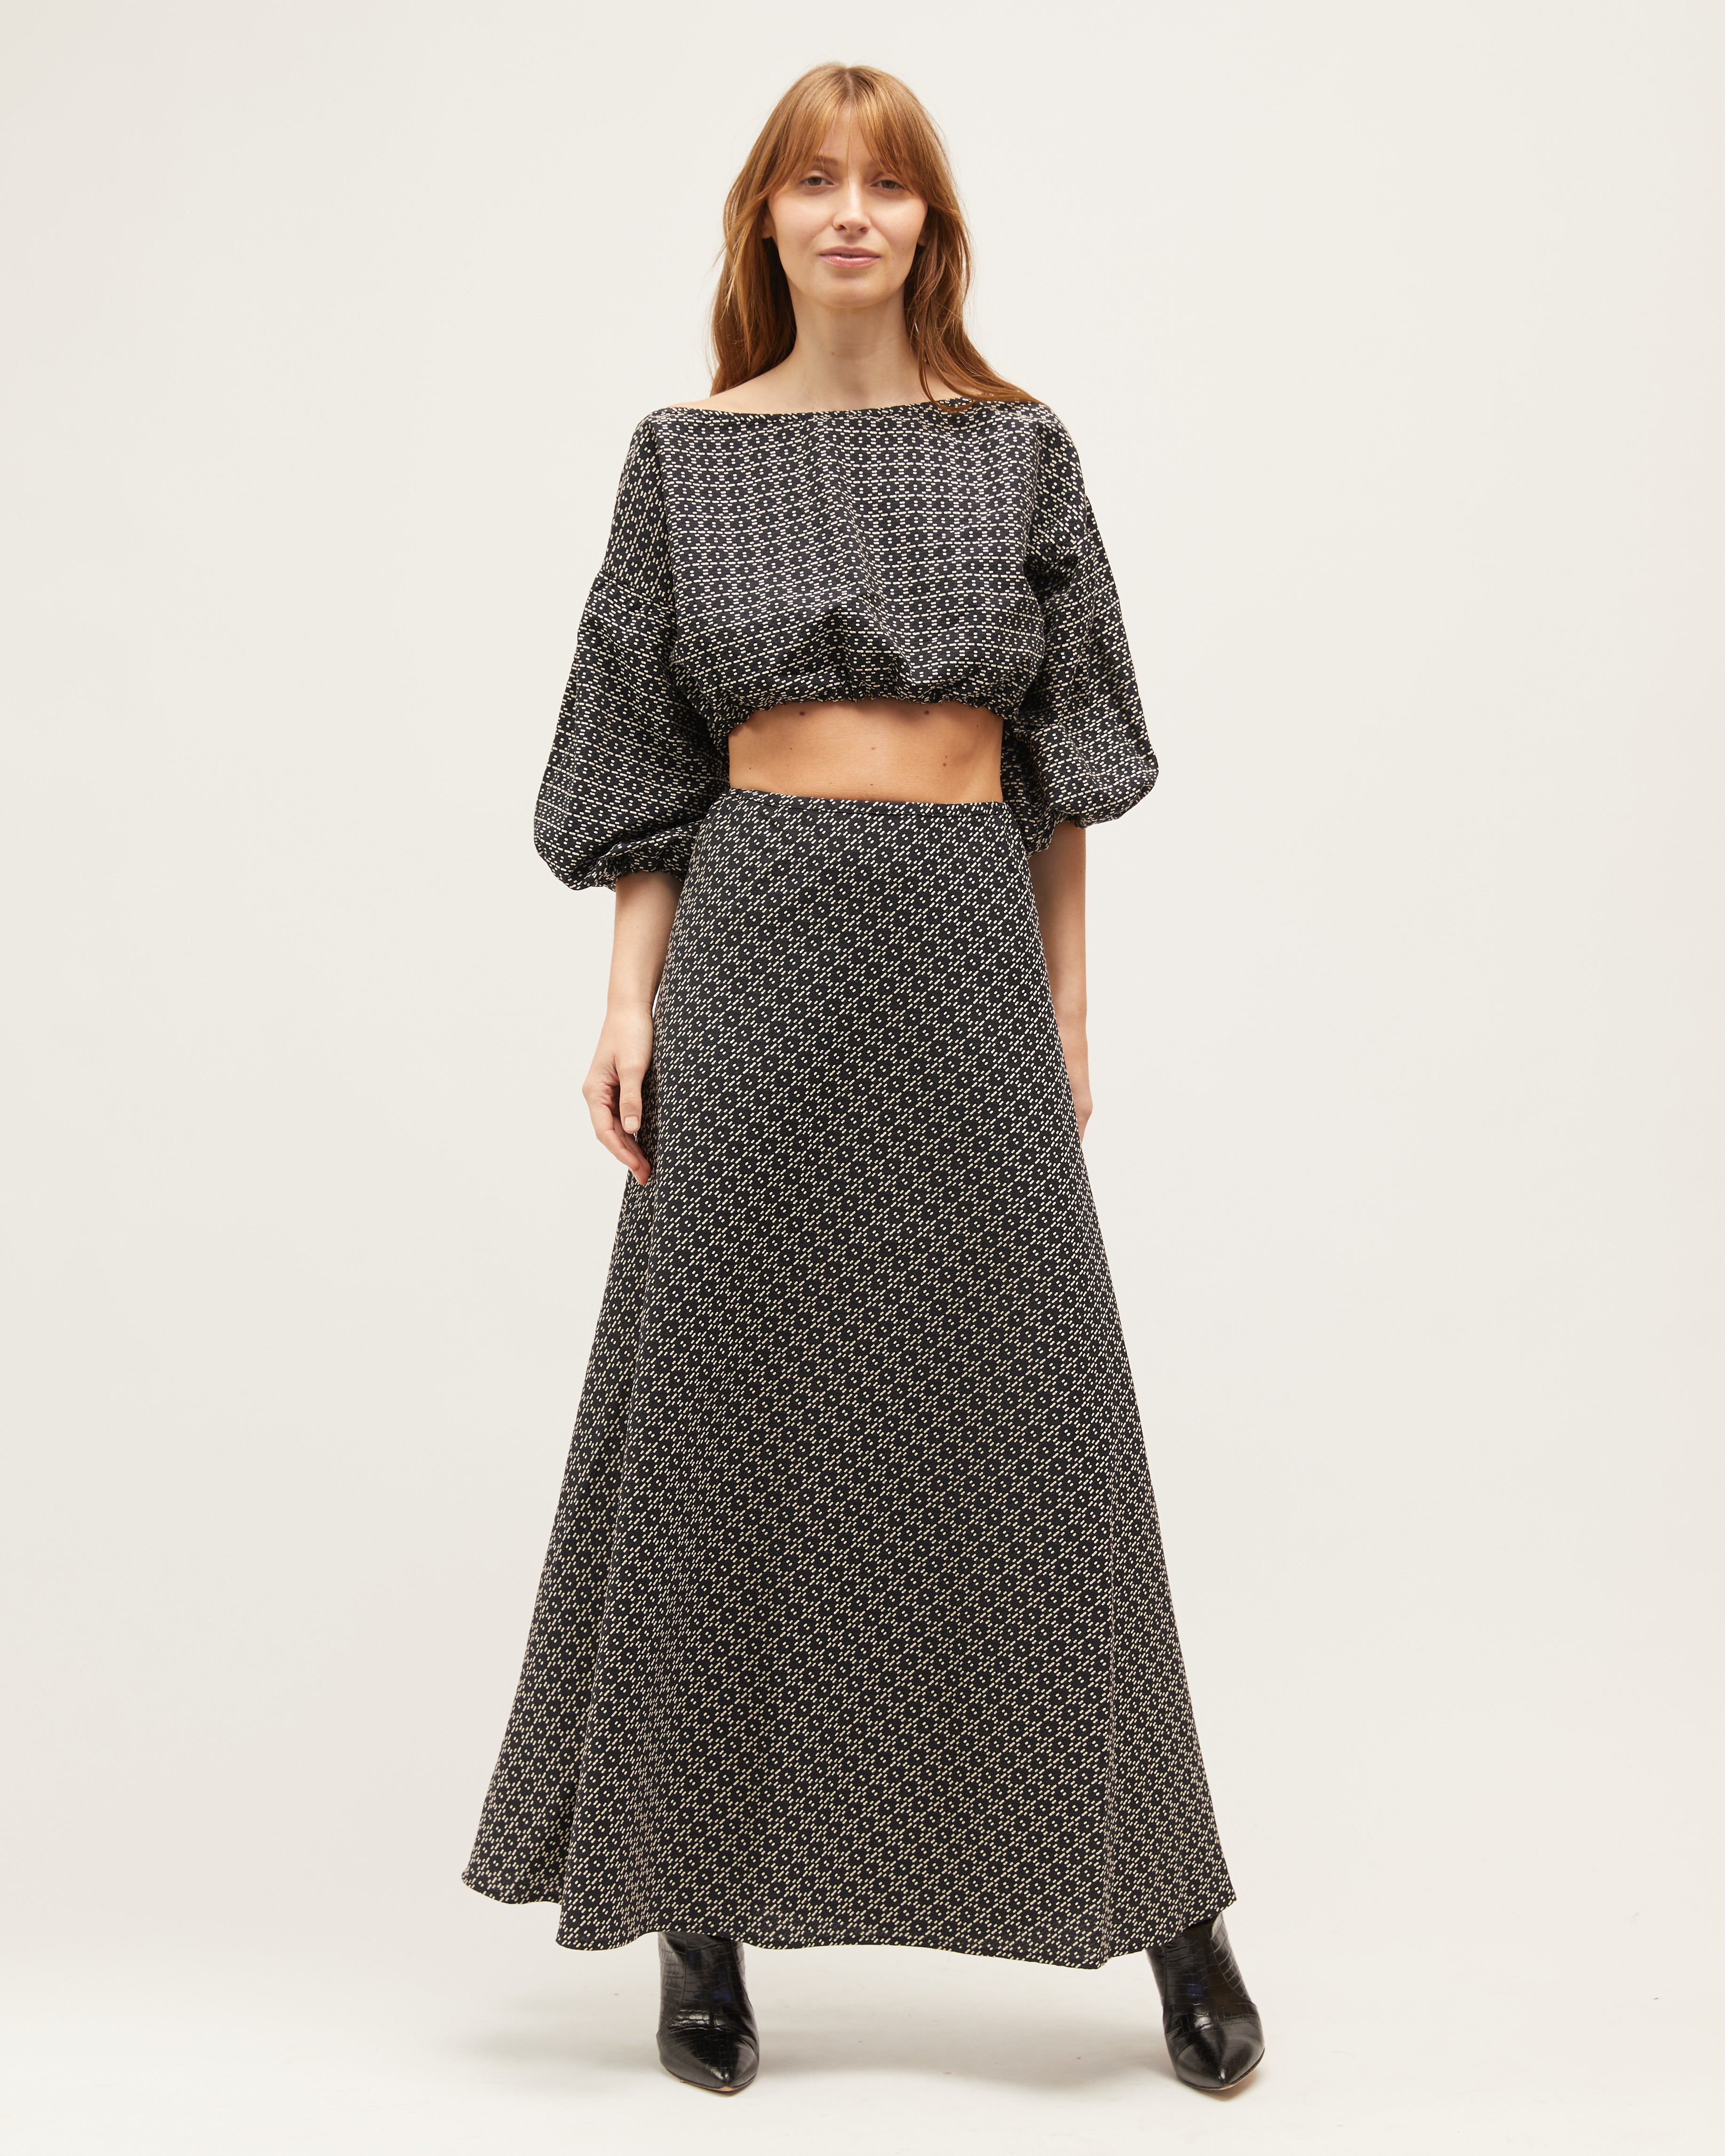 Wray Skirt | Black & Sand $279